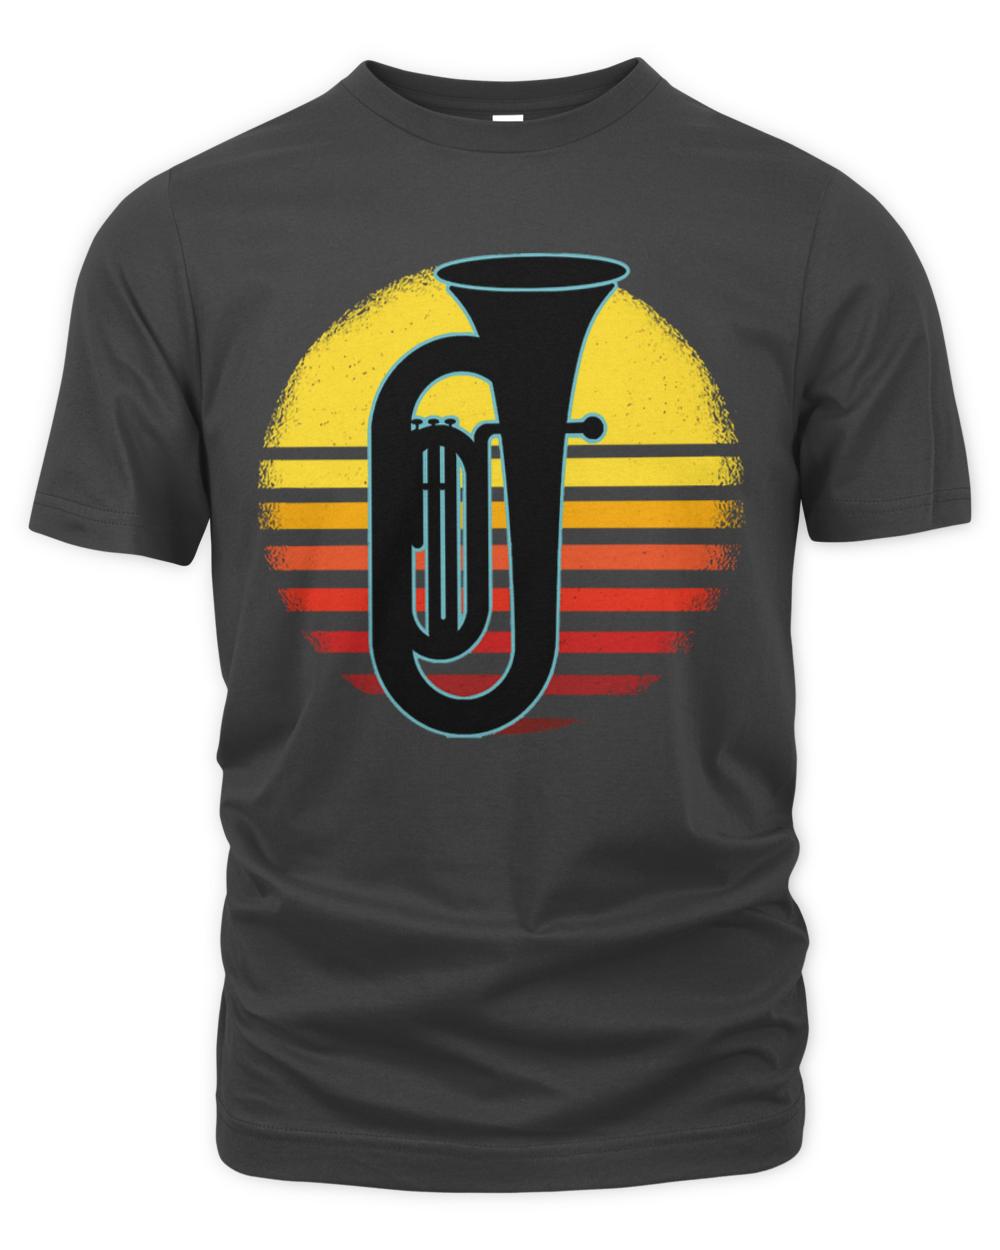 Tuba Player T- Shirt Tuba Player Tuba Musical Instrument T- Shirt (8)